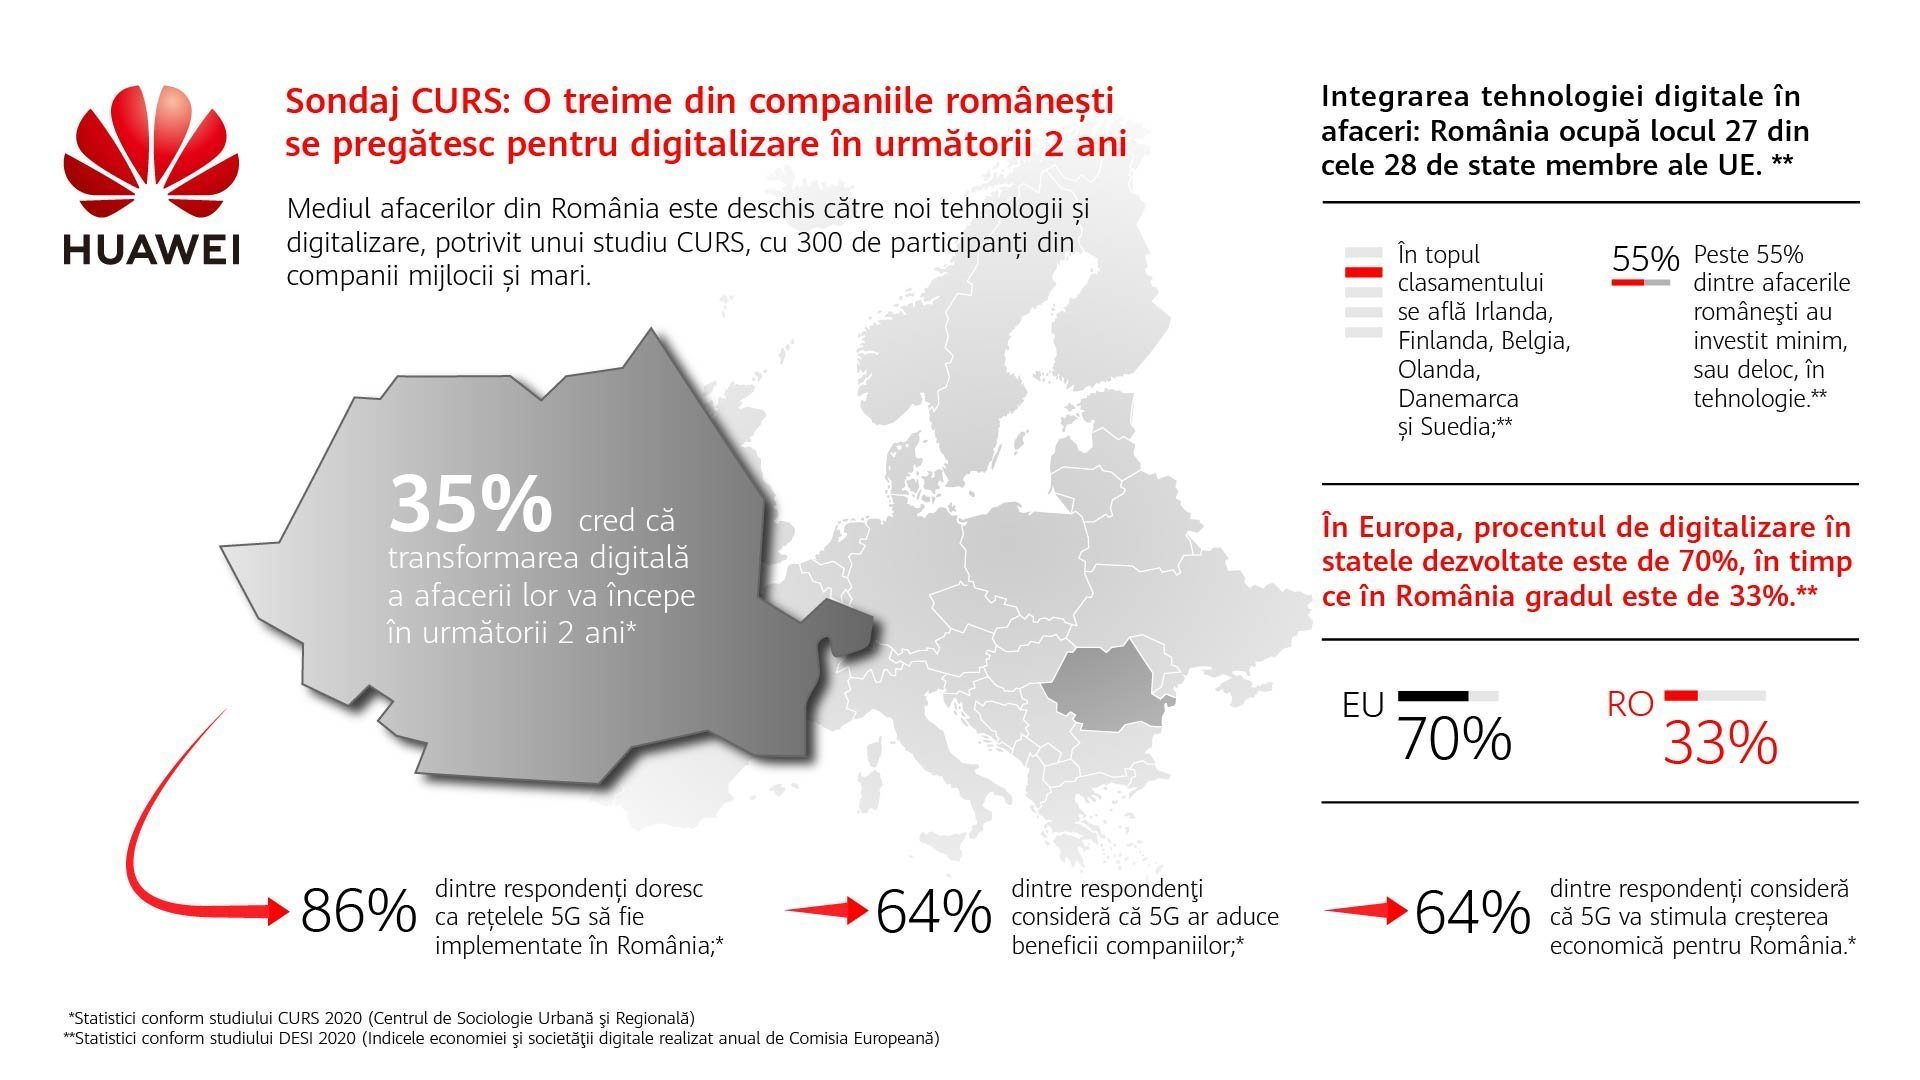 Sondaj CURS: O treime dintre firmele din România se pregătesc de digitalizare în următorii doi ani